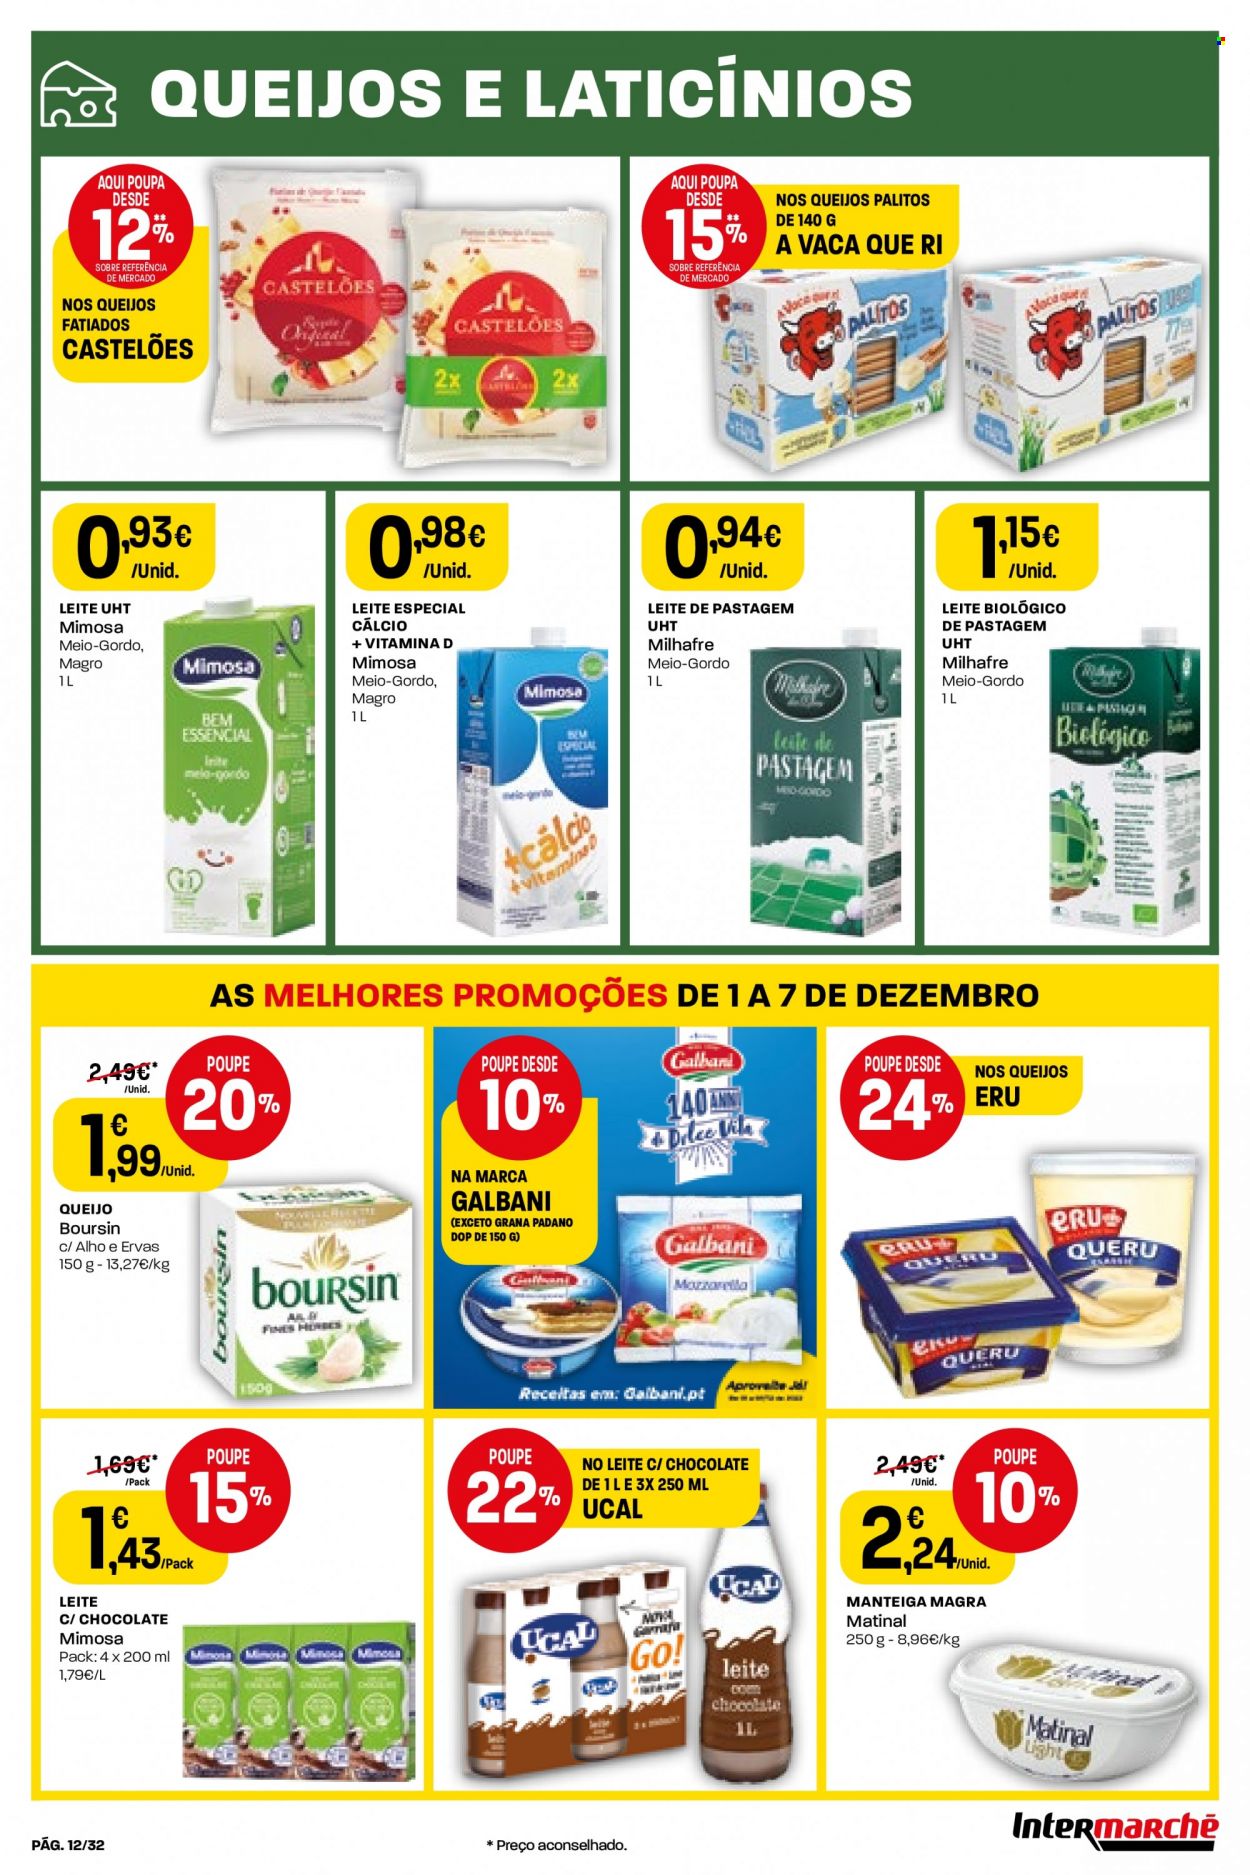 thumbnail - Folheto Intermarché - 1.12.2022 - 7.12.2022 - Produtos em promoção - queijo, Grana Padano, Mimosa, leite, manteiga. Página 12.